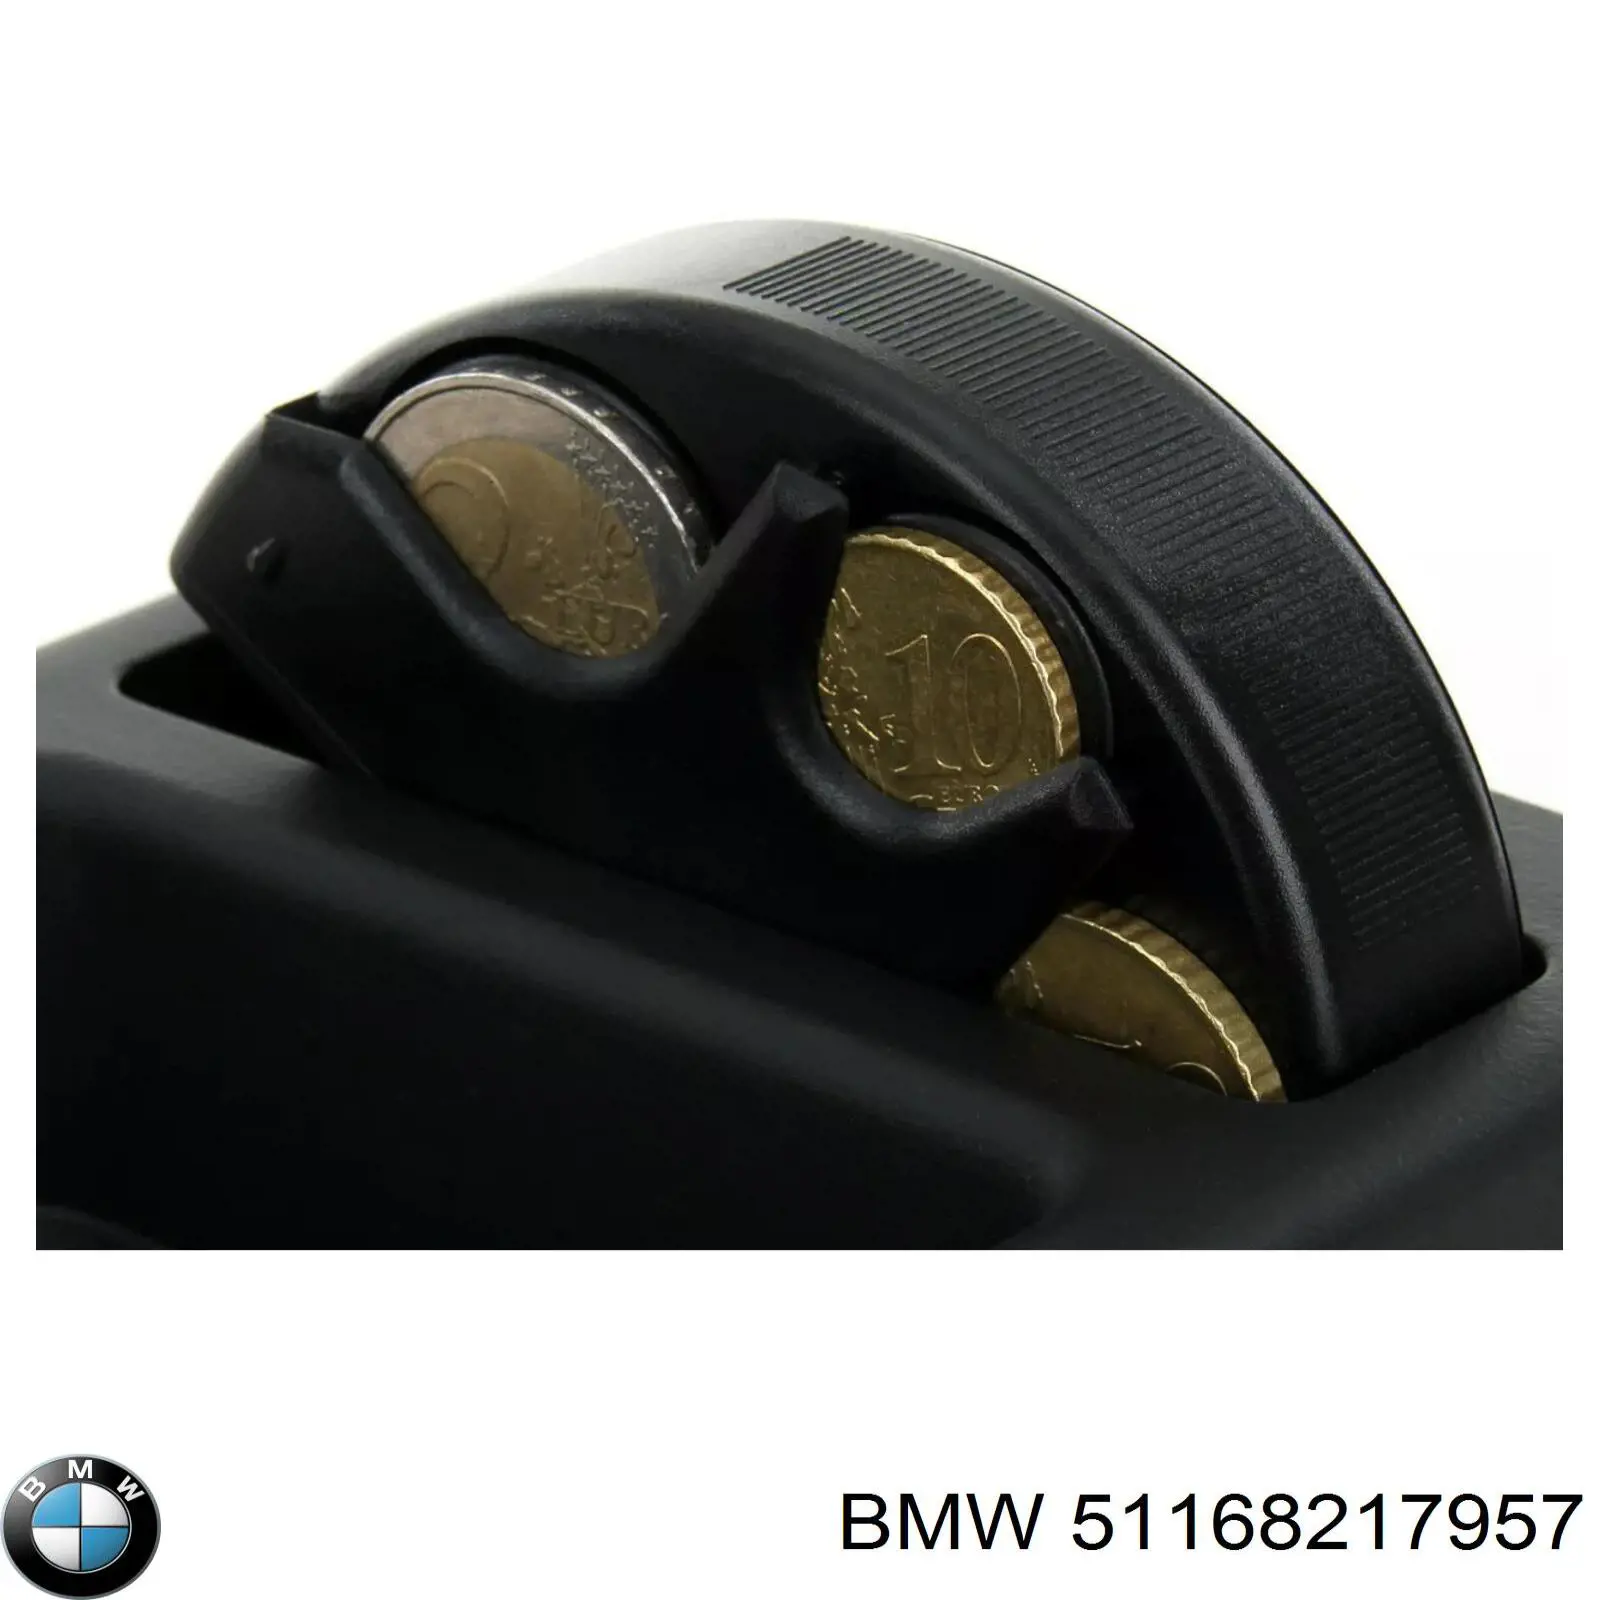 Nty вставка пласт на BMW 3 (E46)